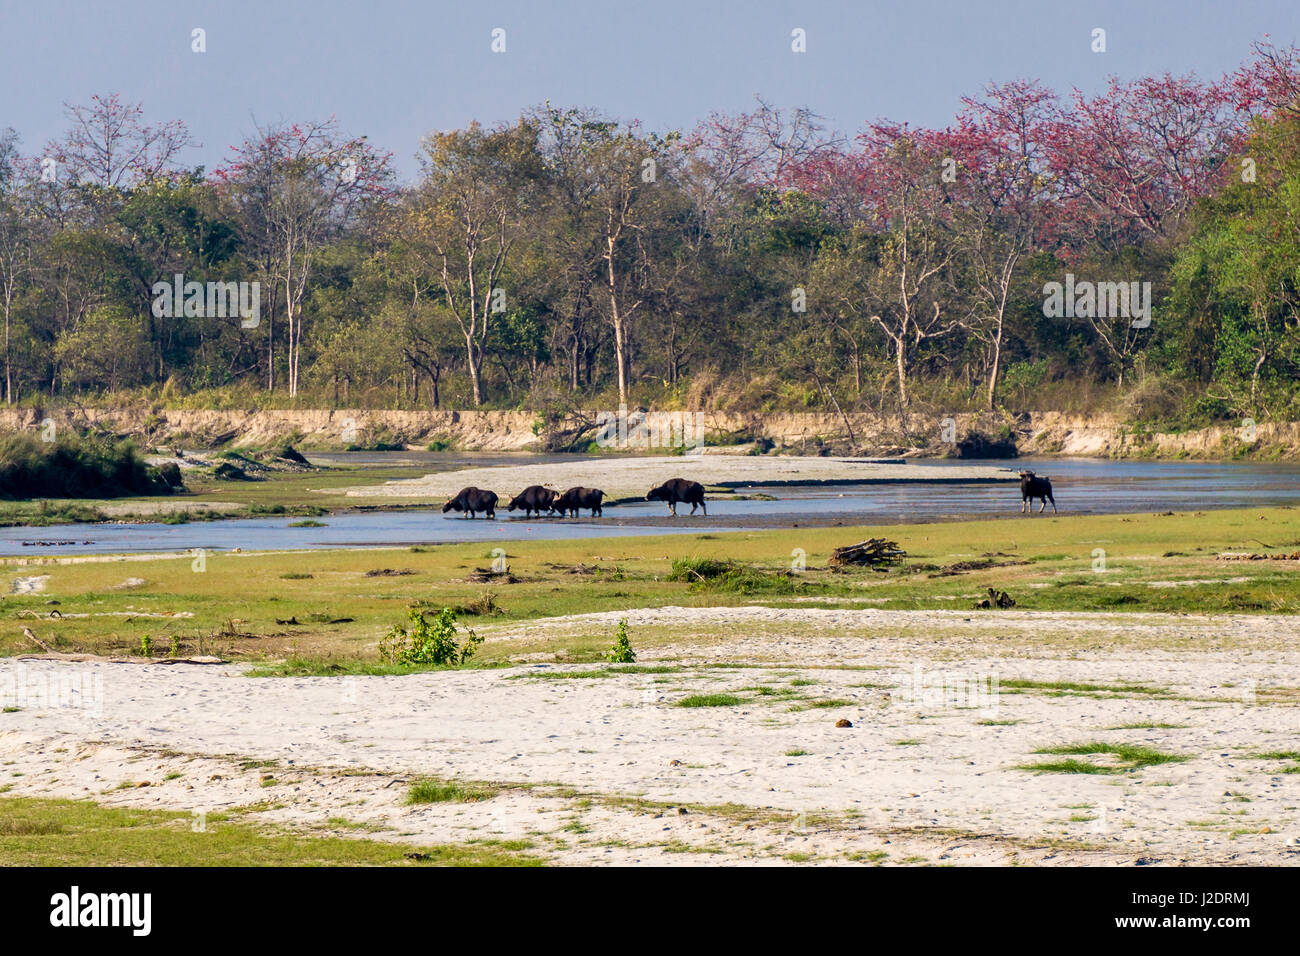 Un gregge di gaurs (Bos gaurus), il bisonte indiano, attraversa il fiume rapti in Chitwan il parco nazionale Foto Stock